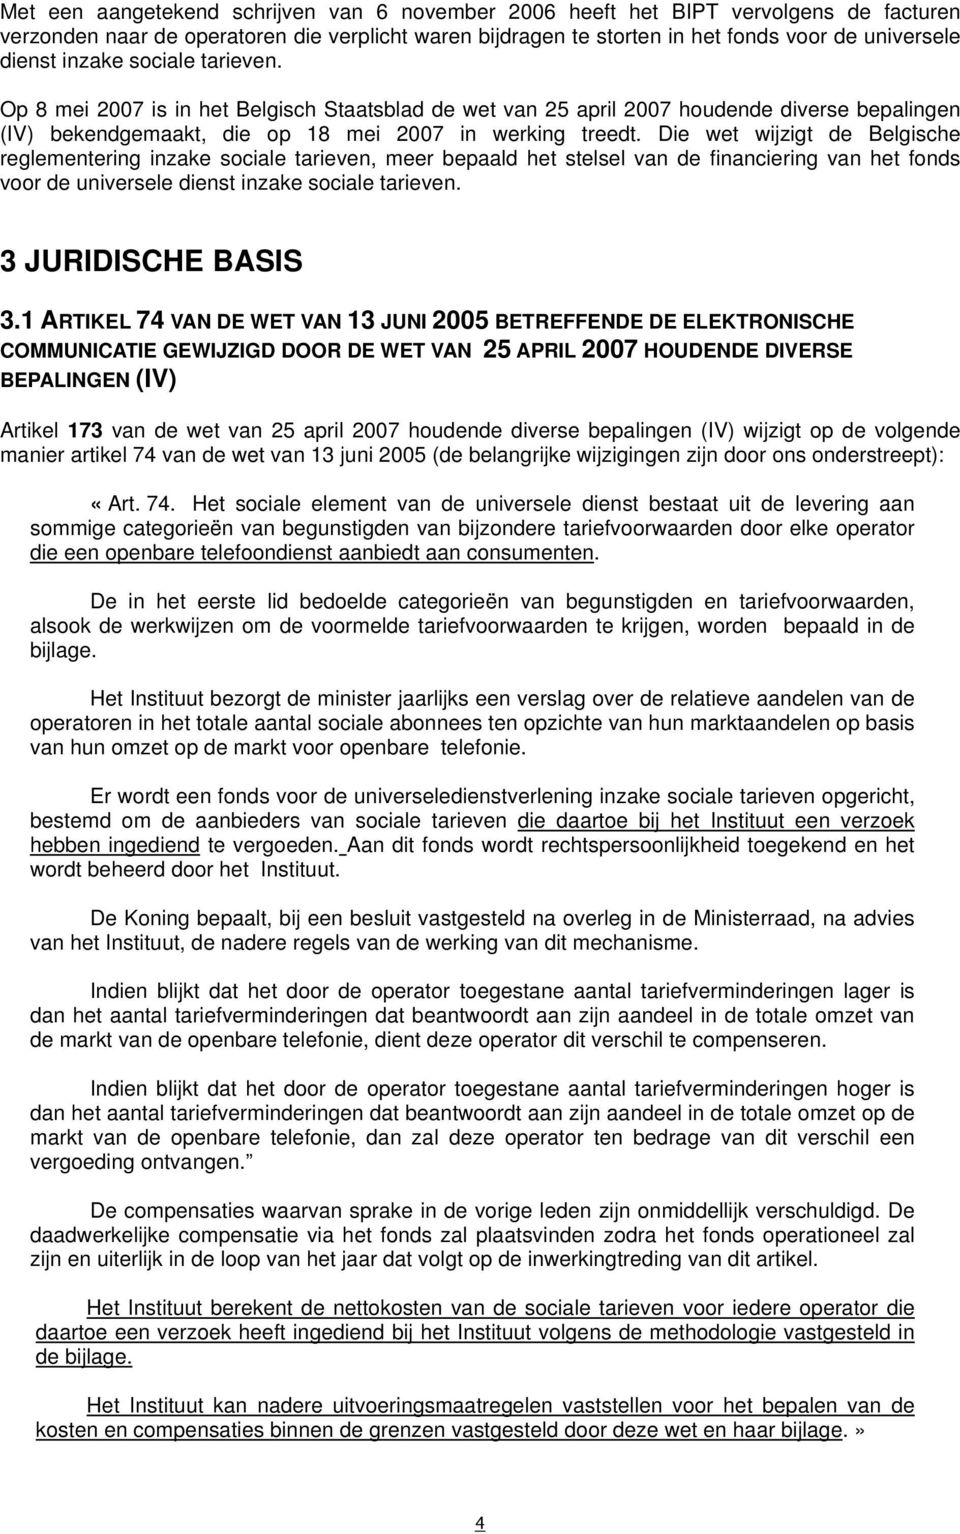 Die wet wijzigt de Belgische reglementering inzake sociale tarieven, meer bepaald het stelsel van de financiering van het fonds voor de universele dienst inzake sociale tarieven. 3 JURIDISCHE BASIS 3.